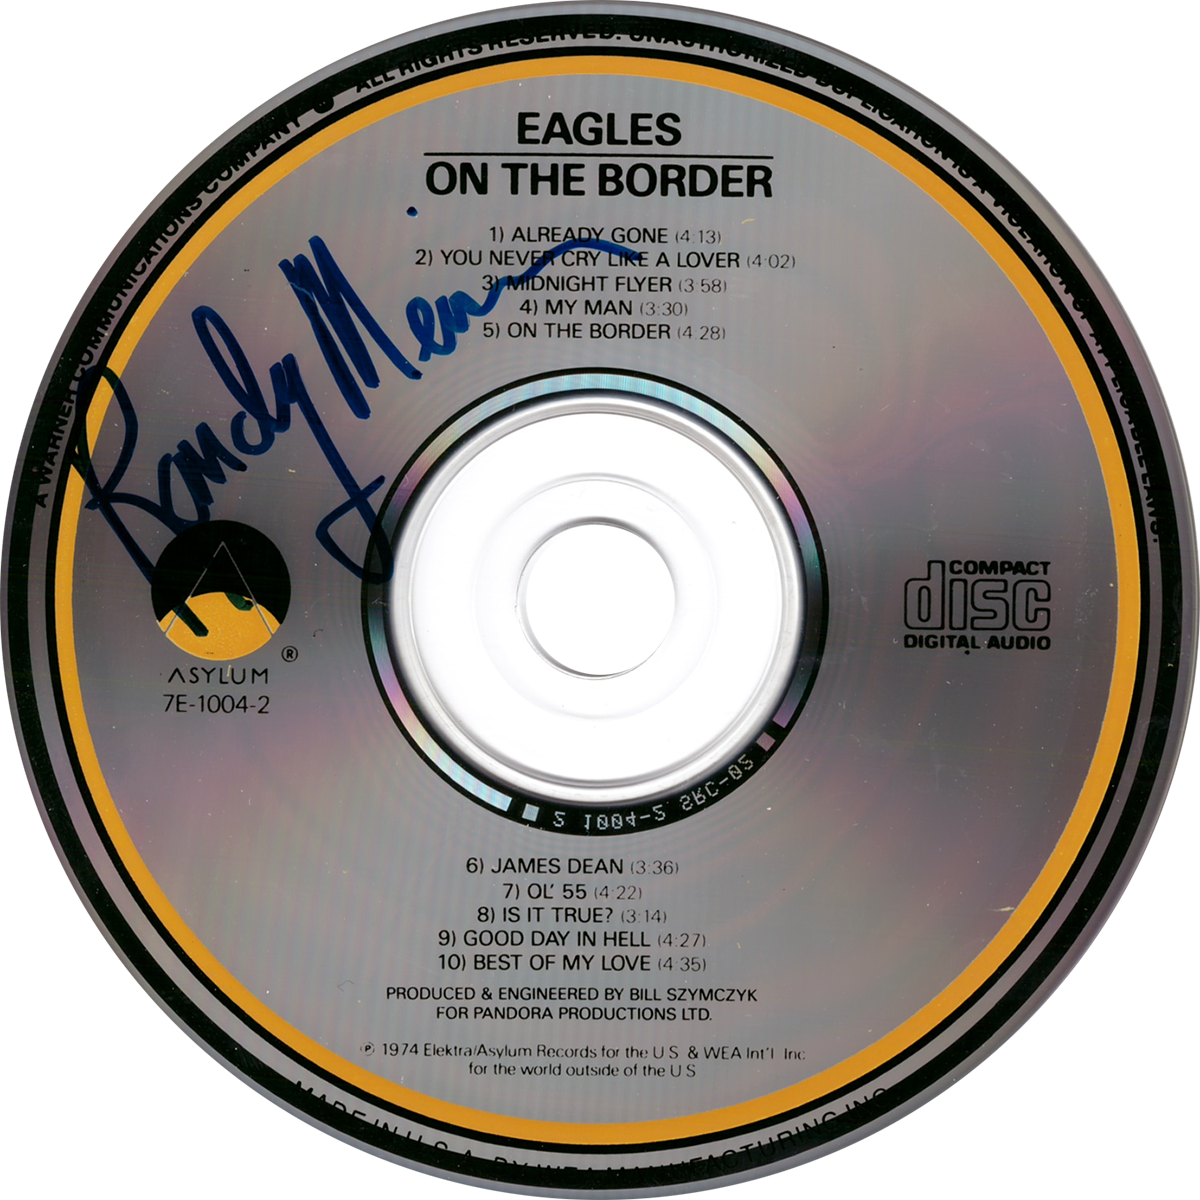 Randy Meisner CD - On The Border